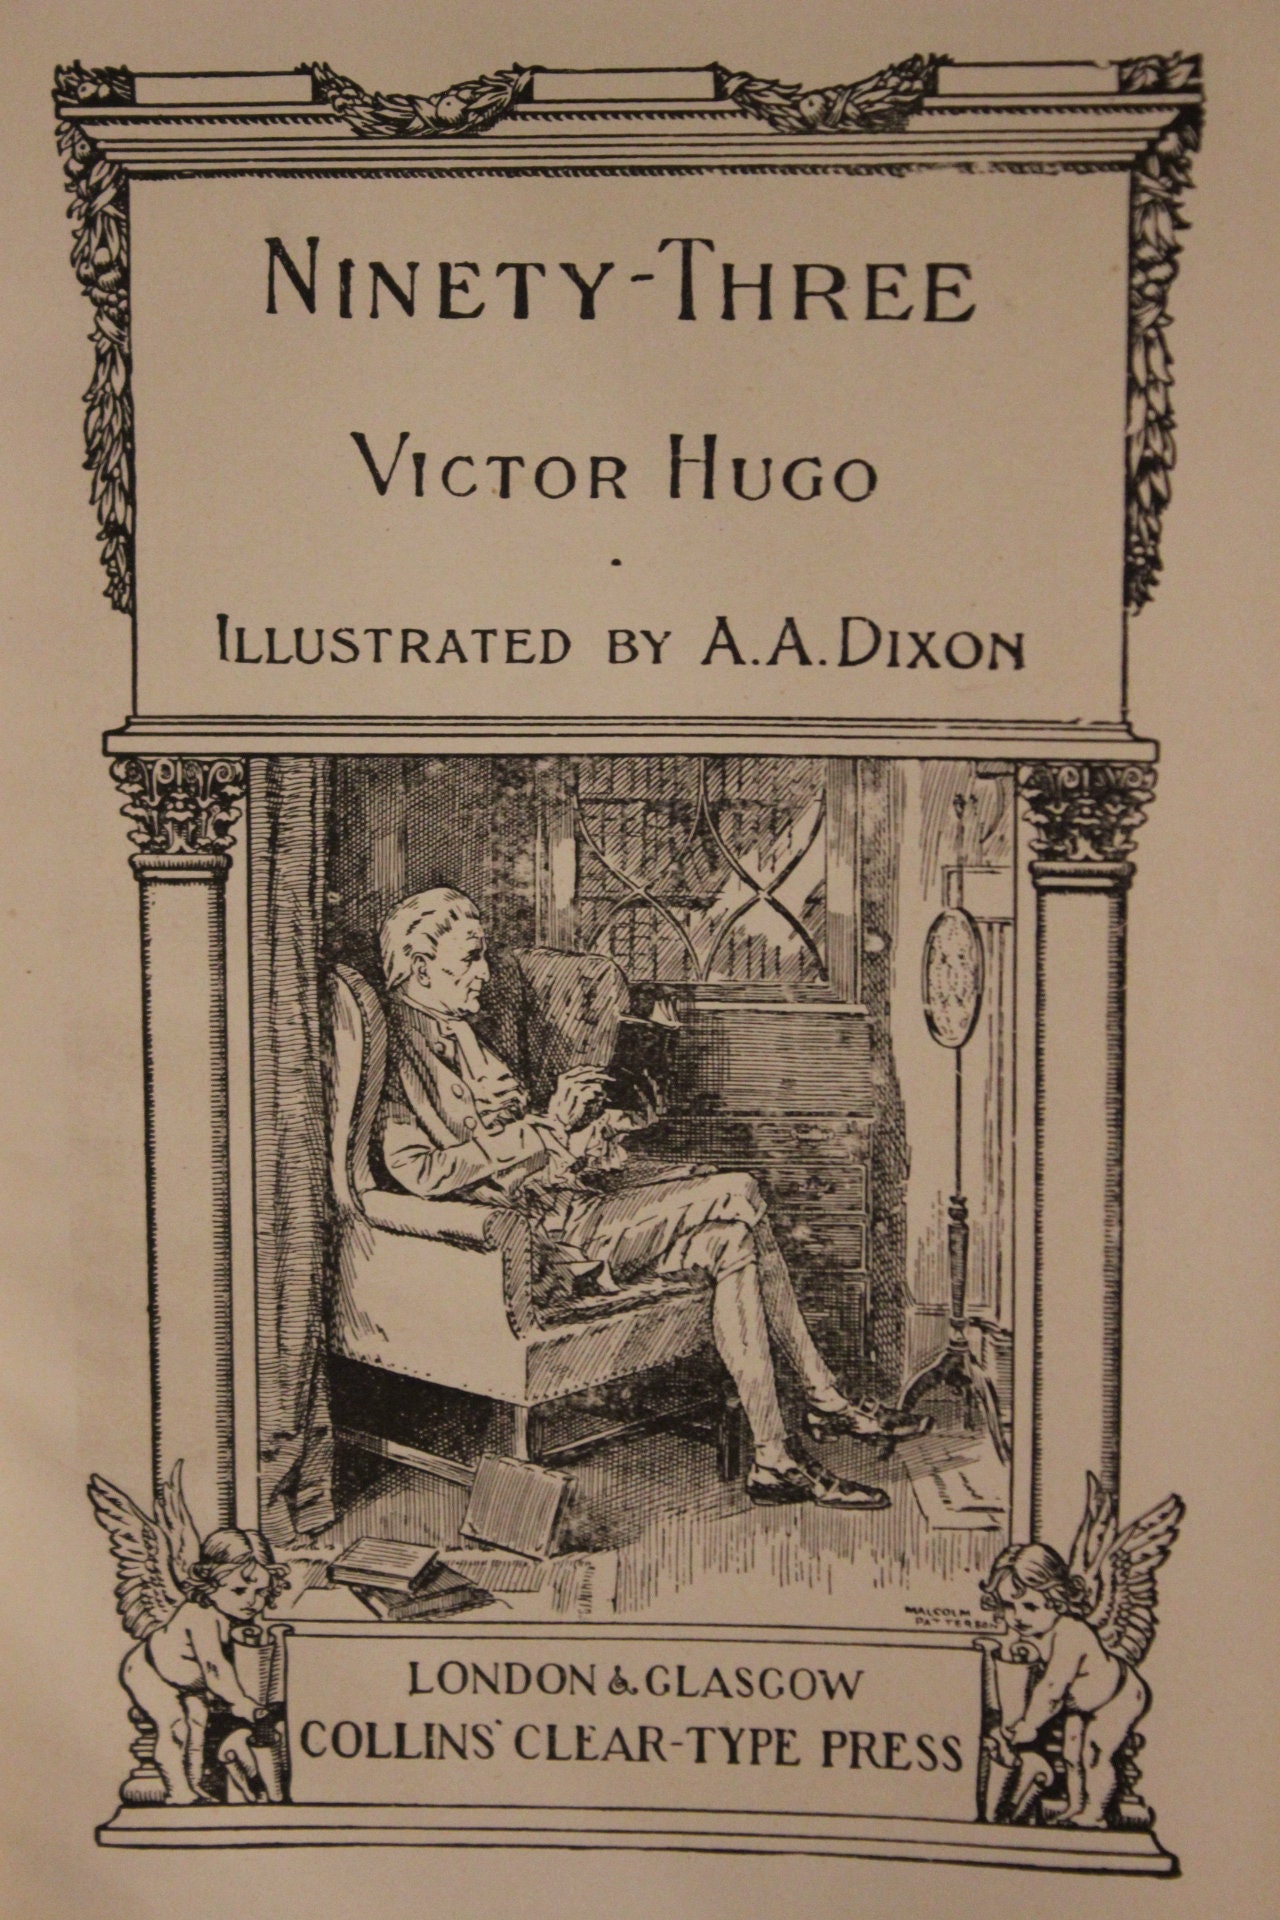 L'As de pique - Hugo Publishing